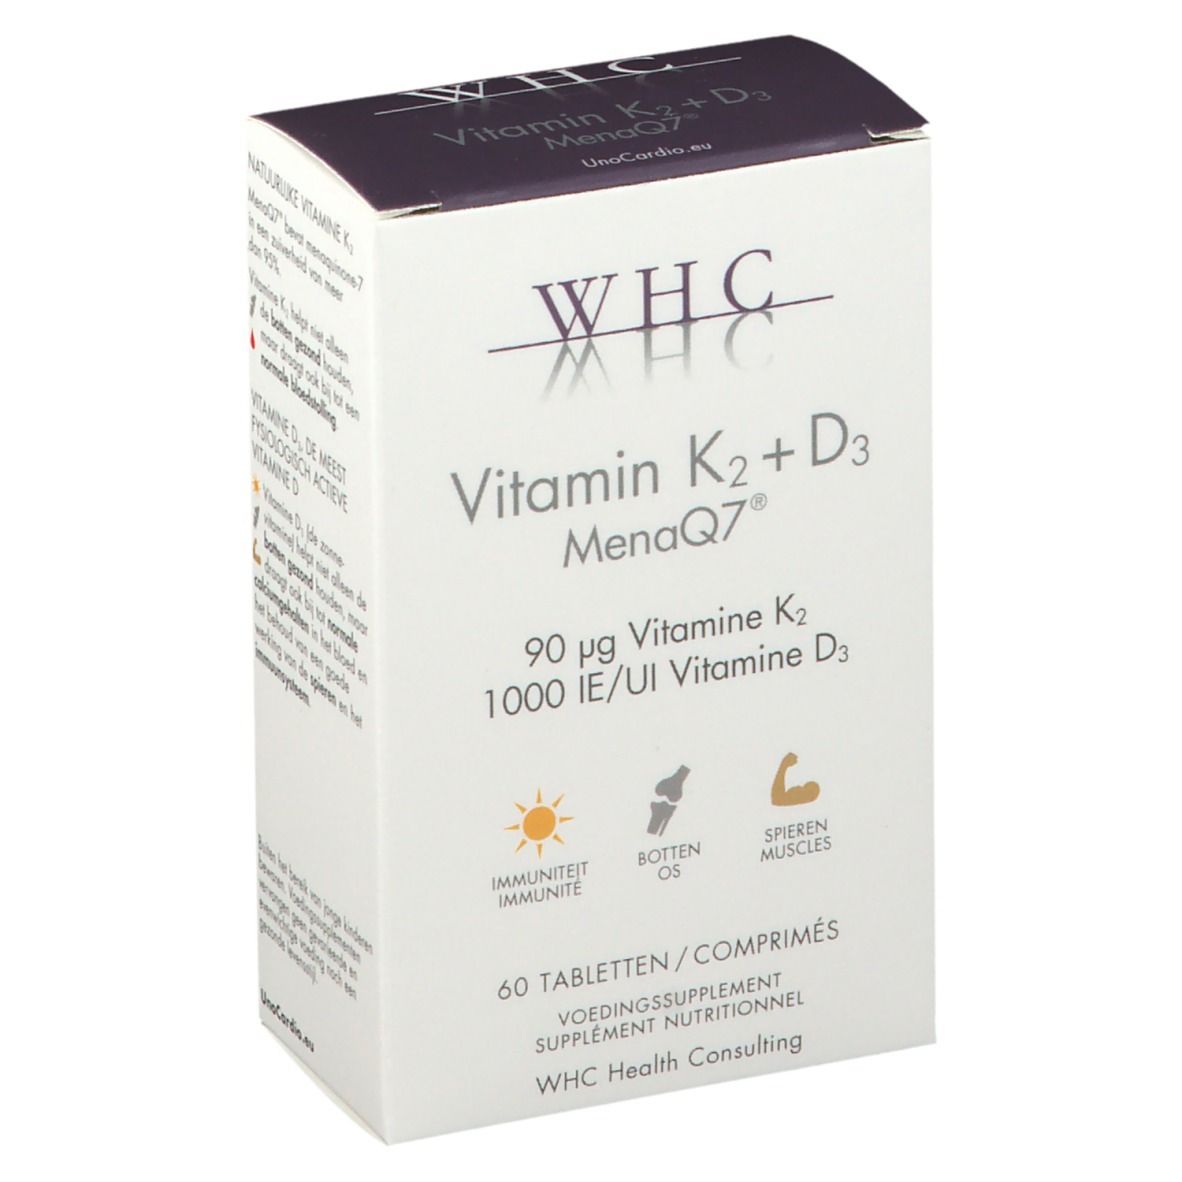 Nutrogenics WHC Vitamine K2 + D3 MenaQ7®